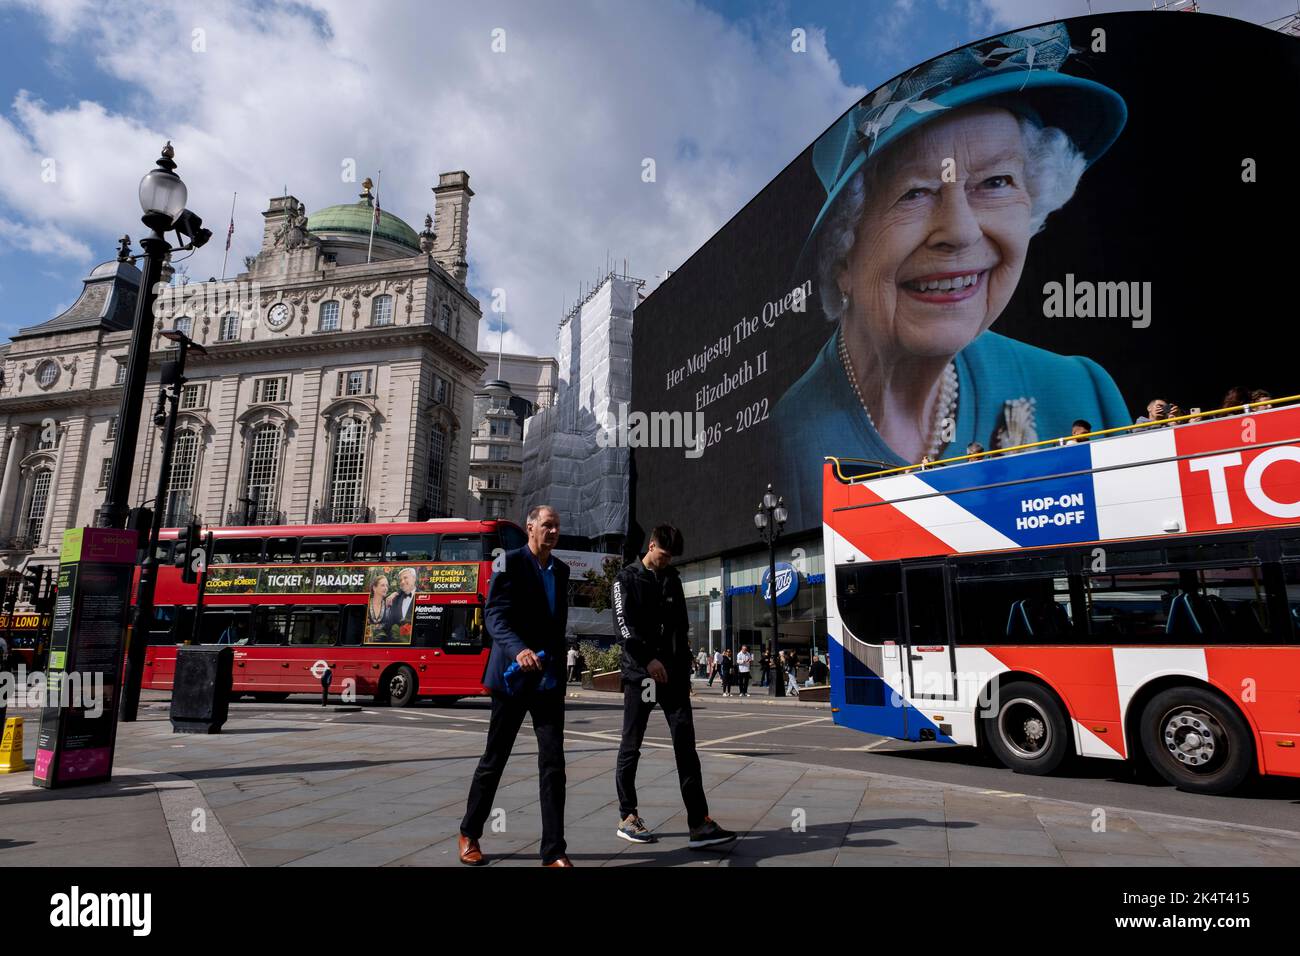 Con la publicidad suspendida, los visitantes y turistas en Piccadilly Circus interactúan debajo de una imagen a color de la Reina Isabel II que está en exhibición en las pantallas publicitarias a gran escala el día siguiente a su muerte el 9th de septiembre de 2022 en Londres, Reino Unido. La Reina, que tenía 96 años, reinó como monarca del Reino Unido y de la Commonwealth durante 70 años. Foto de stock